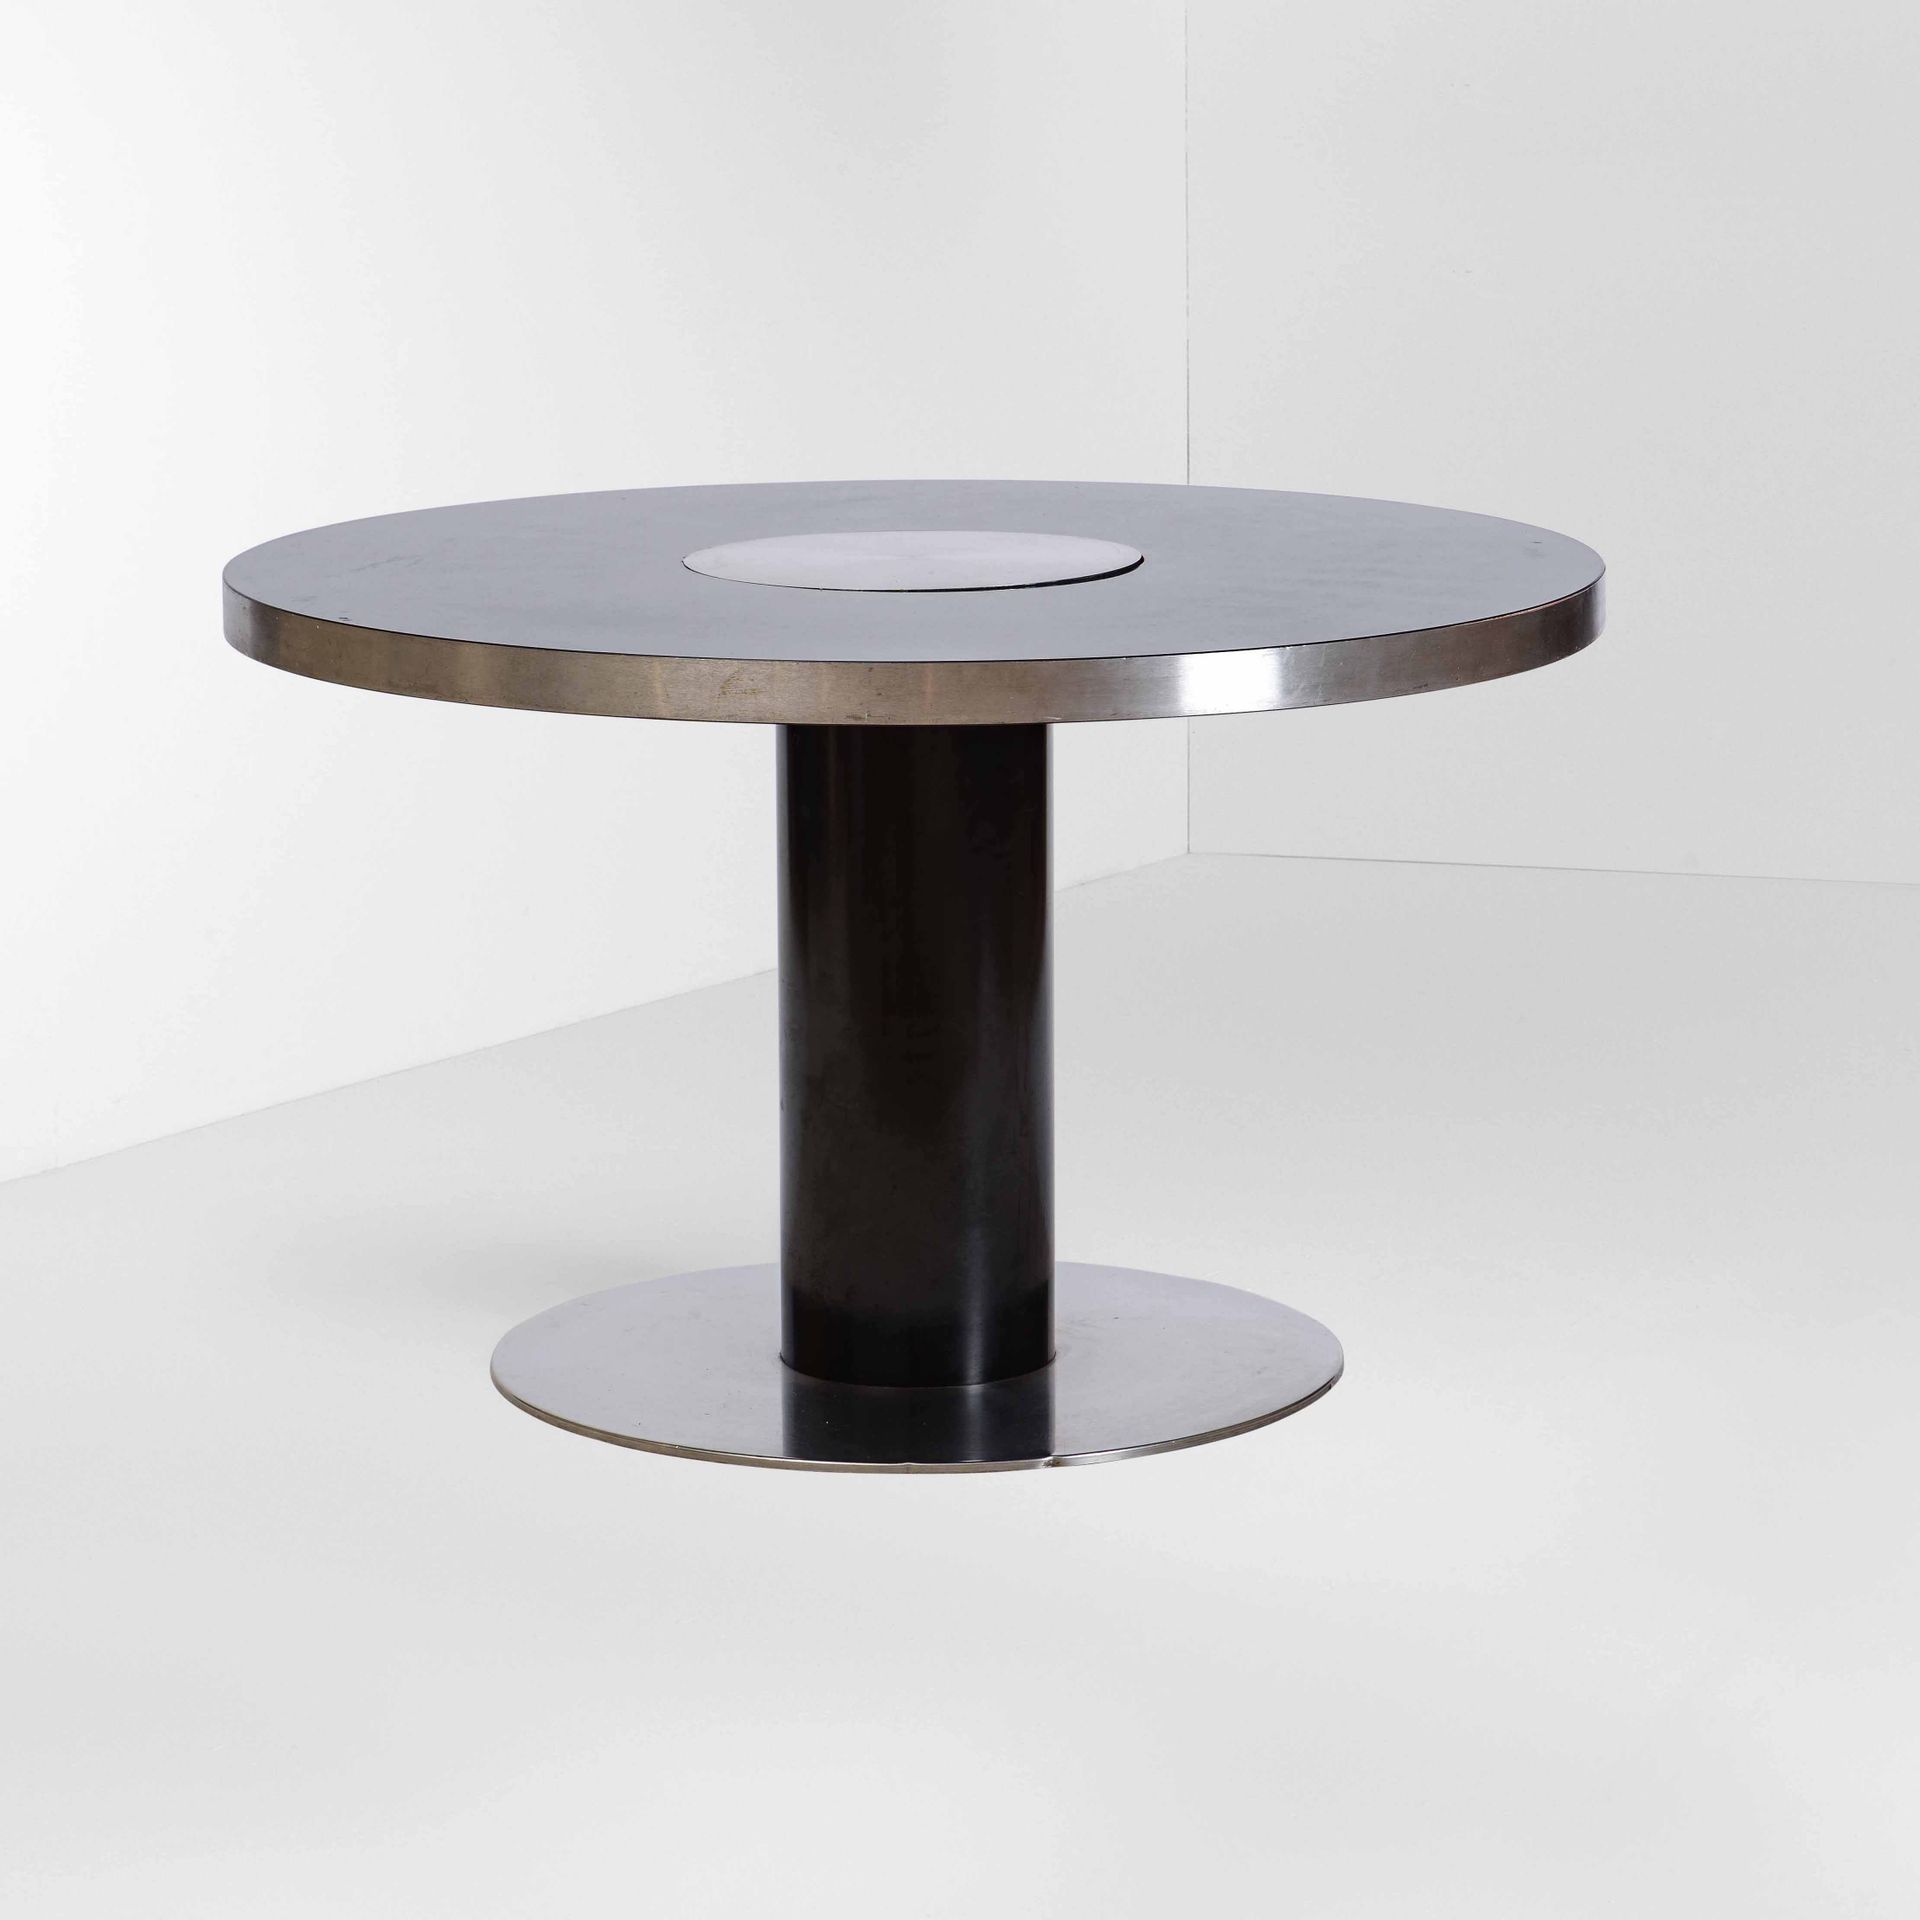 Willy Rizzo, 圆桌，型号：TP UNOPIEDI，结构为漆面金属、钢和复合板。意大利Willy Rizzo工作室制造，1970年，约120x72厘米